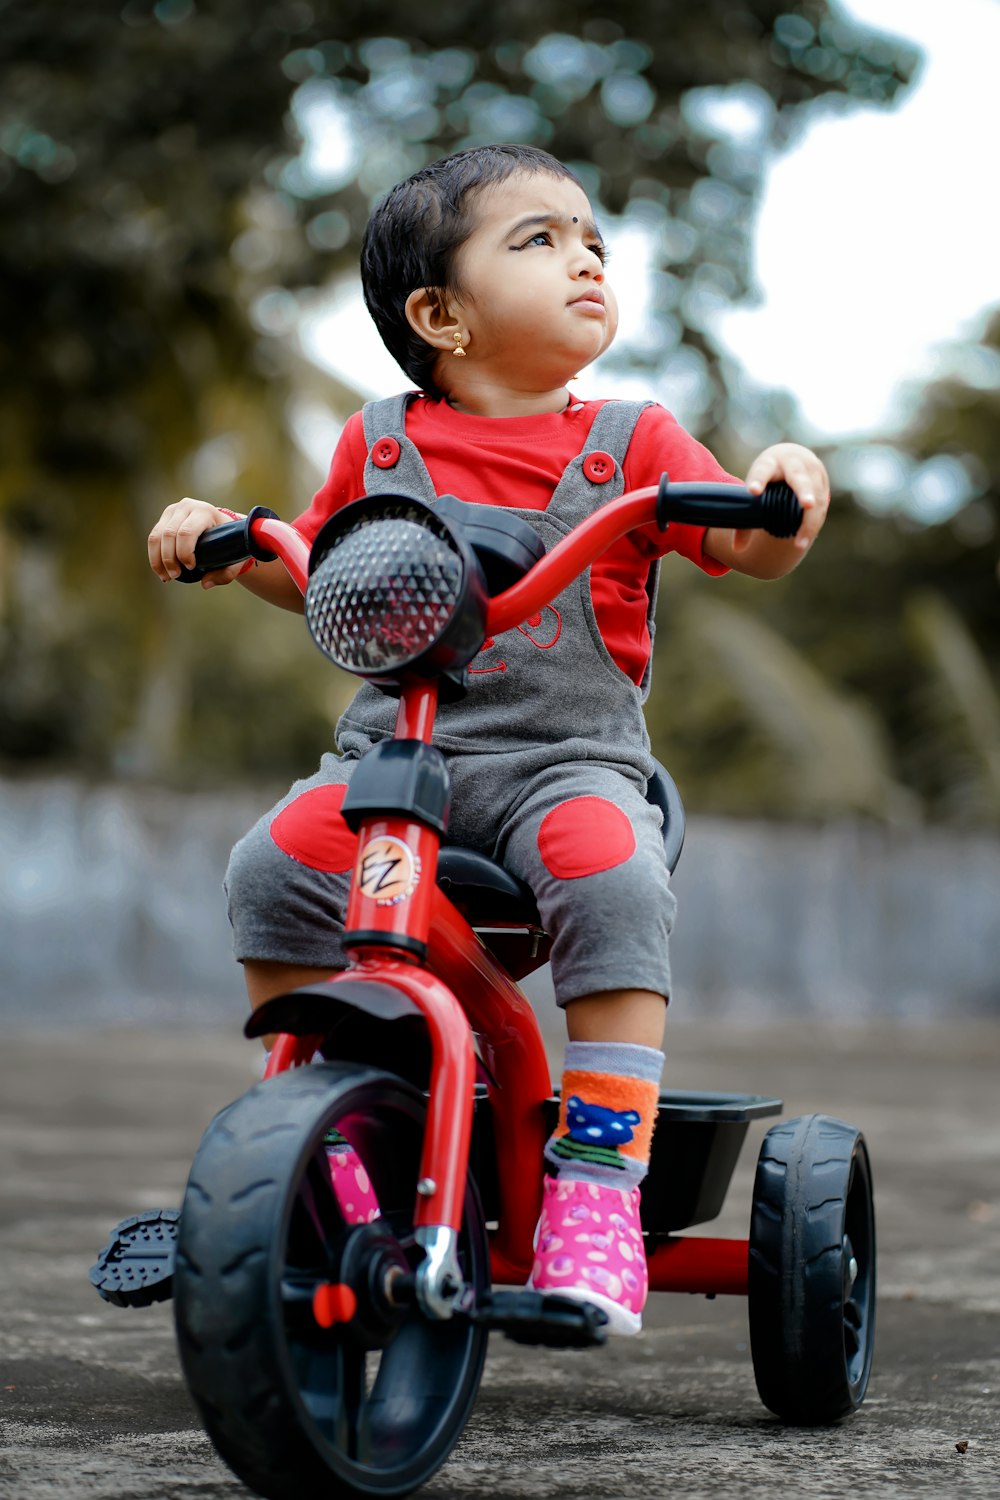 빨간색과 검은색 오토바이 장난감을 타고 빨간 셔츠를 입은 아이